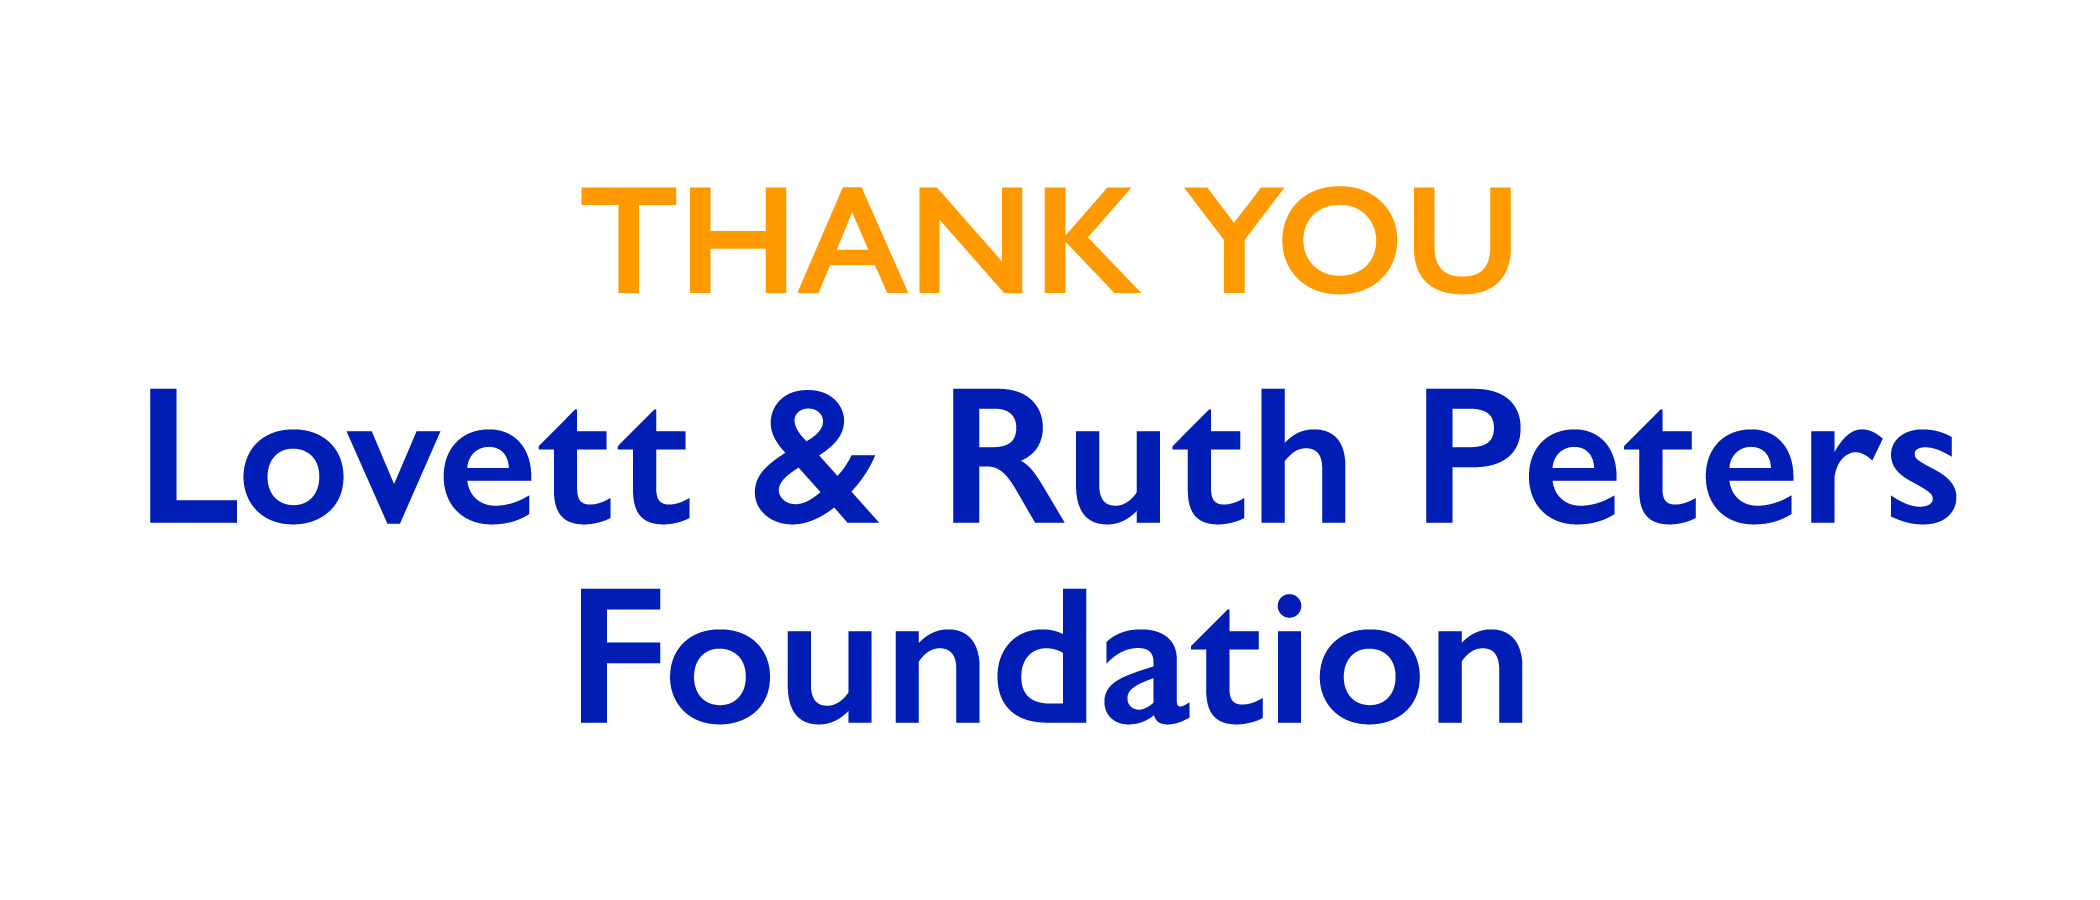 Lovett & Ruth Peters Foundation